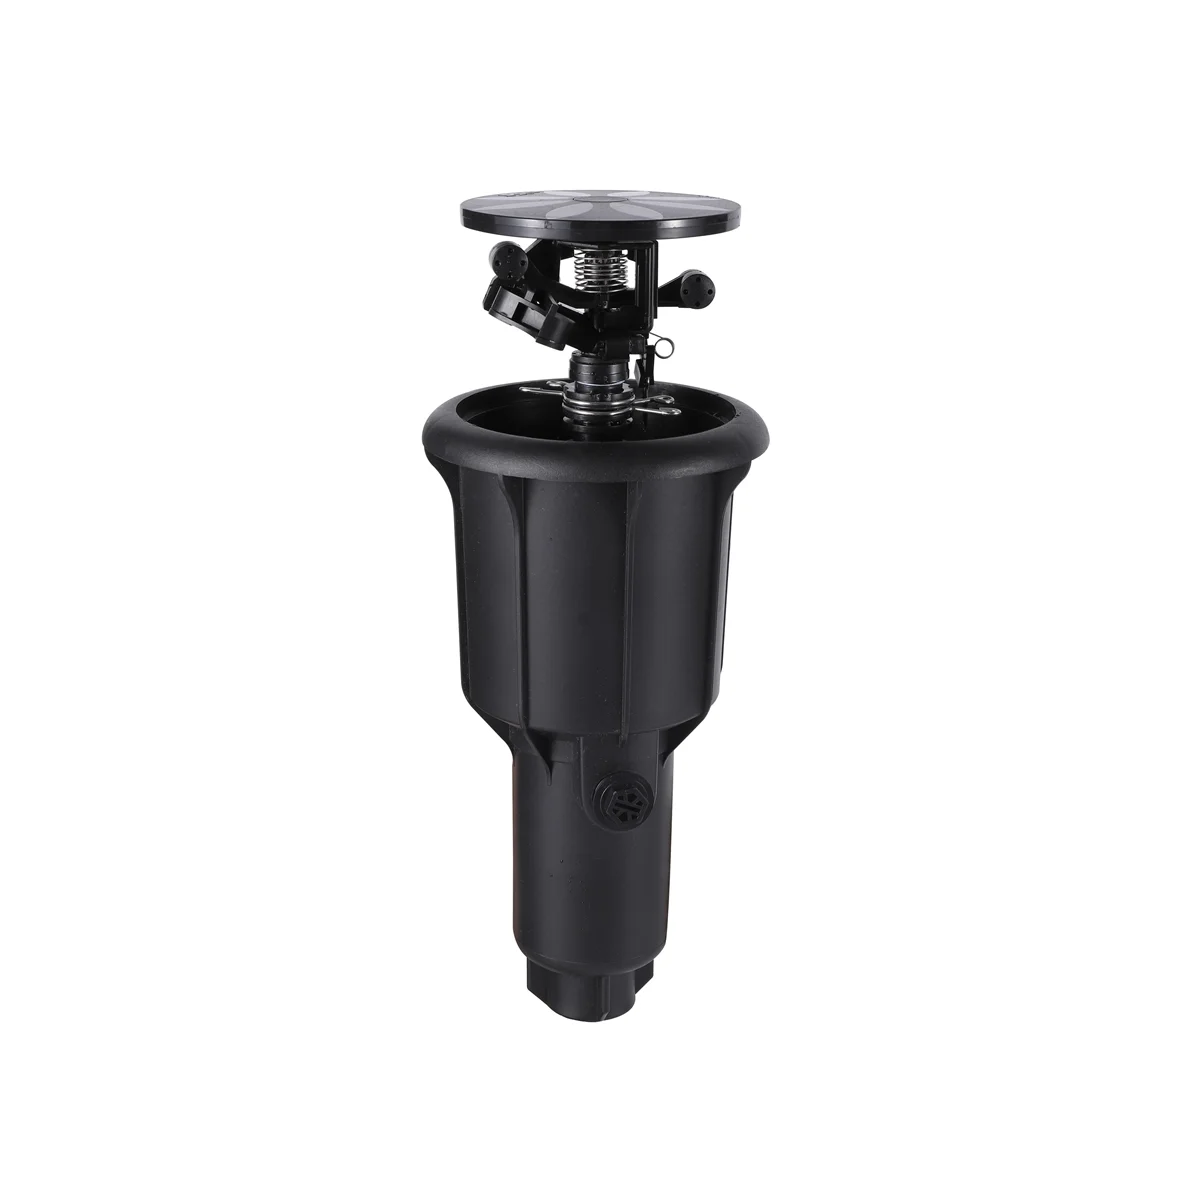 

1/2 Inch 3/4Inch Integrated Sprinkler High Water Pressure 360 Degrees Rotating Watering Pop-Up Spray Head Sprinkler